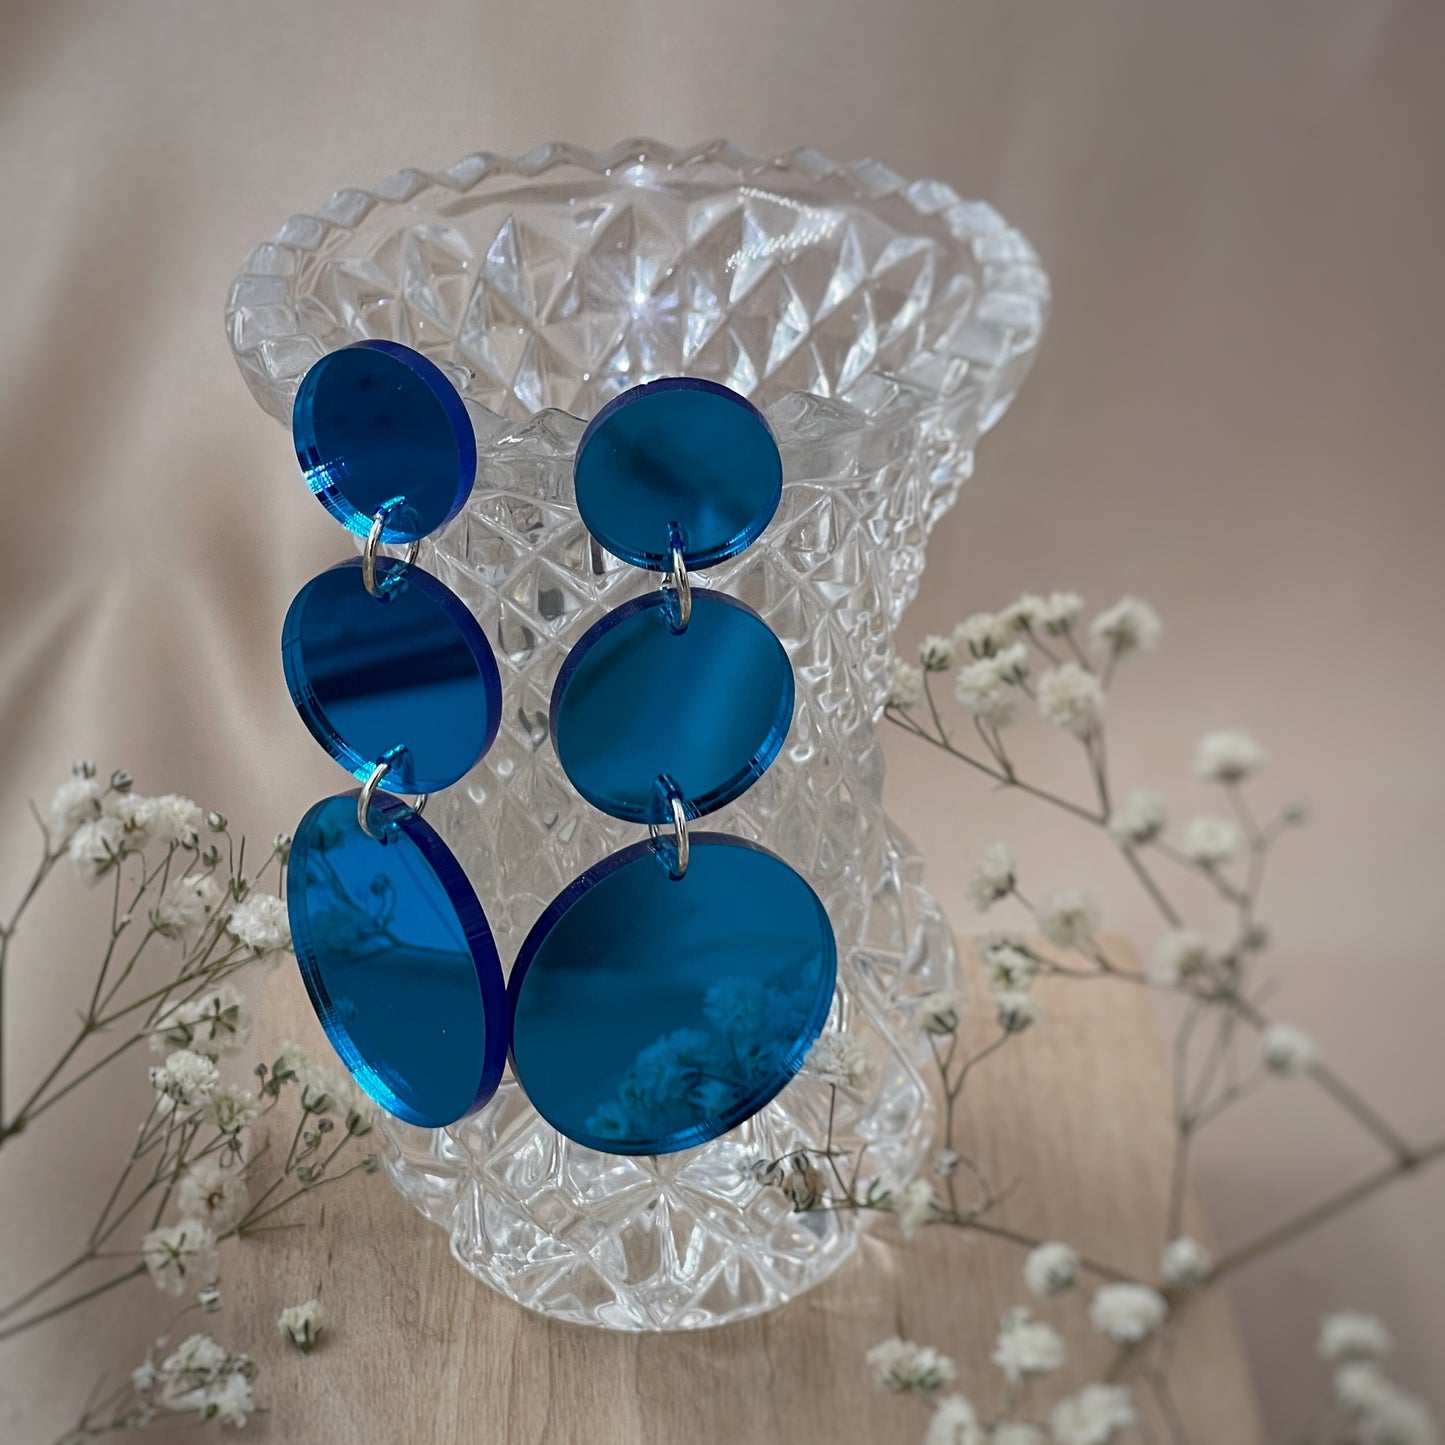 Kauniisti valoa heijastavat peilikorvakorut ovat laadukasta suomalaista käsityötä, ja ne ovat kevyet pitää korvassa. Värivaihtoehtoja löytyy useita, joten jokaista asukokonaisuutta ja tilaisuutta täydentävä korupari löytyy varmasti. Tämä koru on sininen.